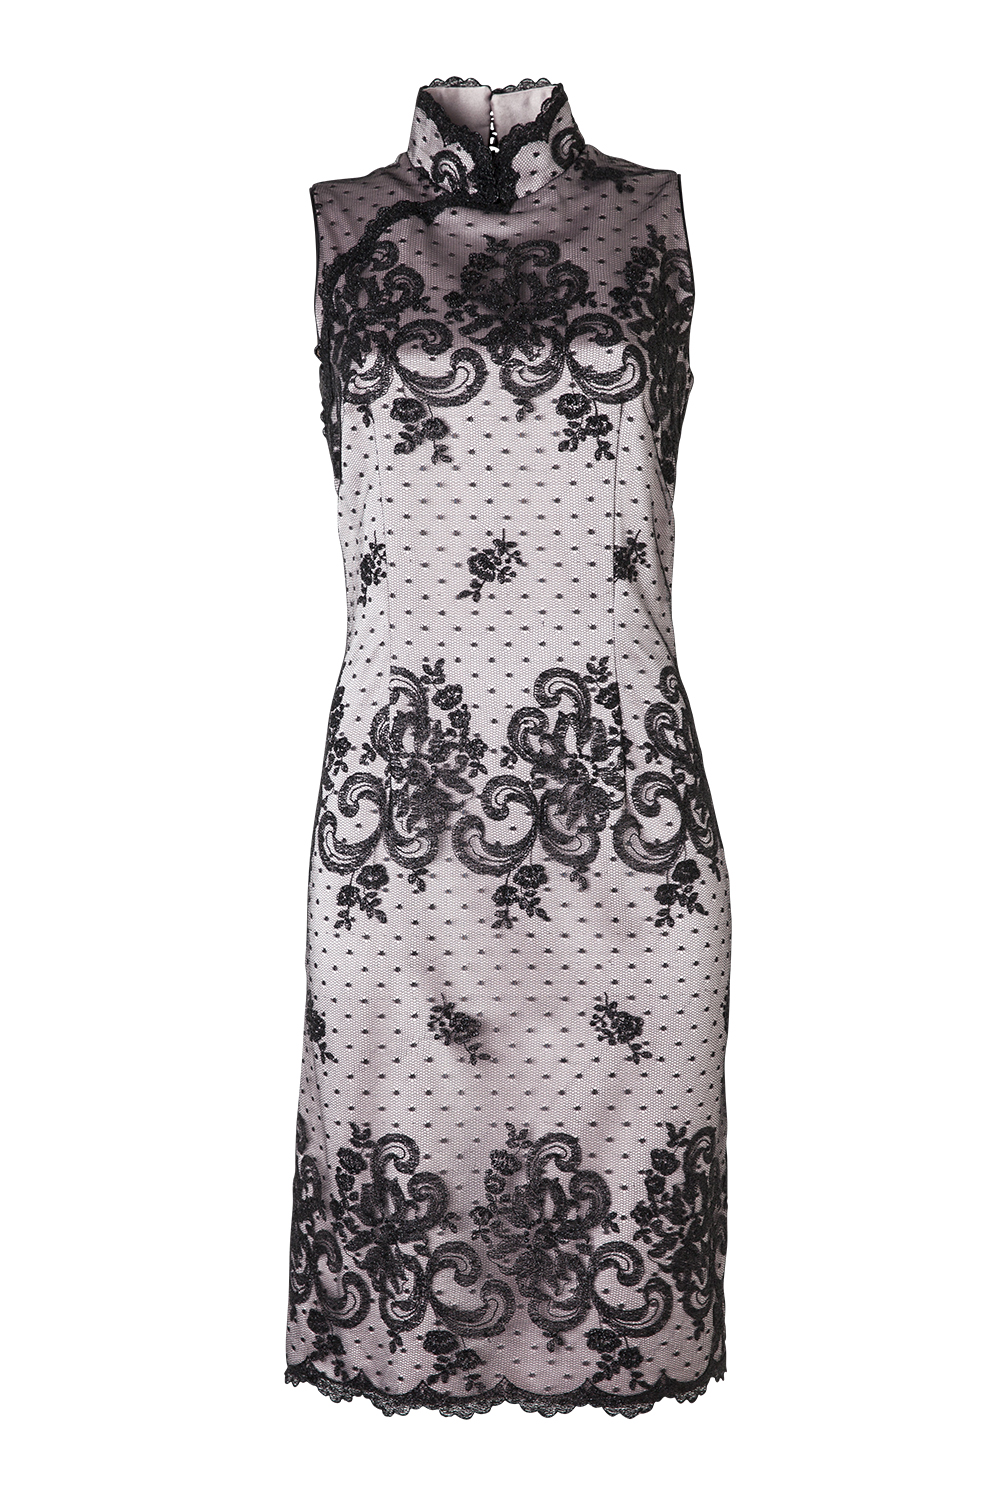 Dress, $1,898, by Liz Mitchell.